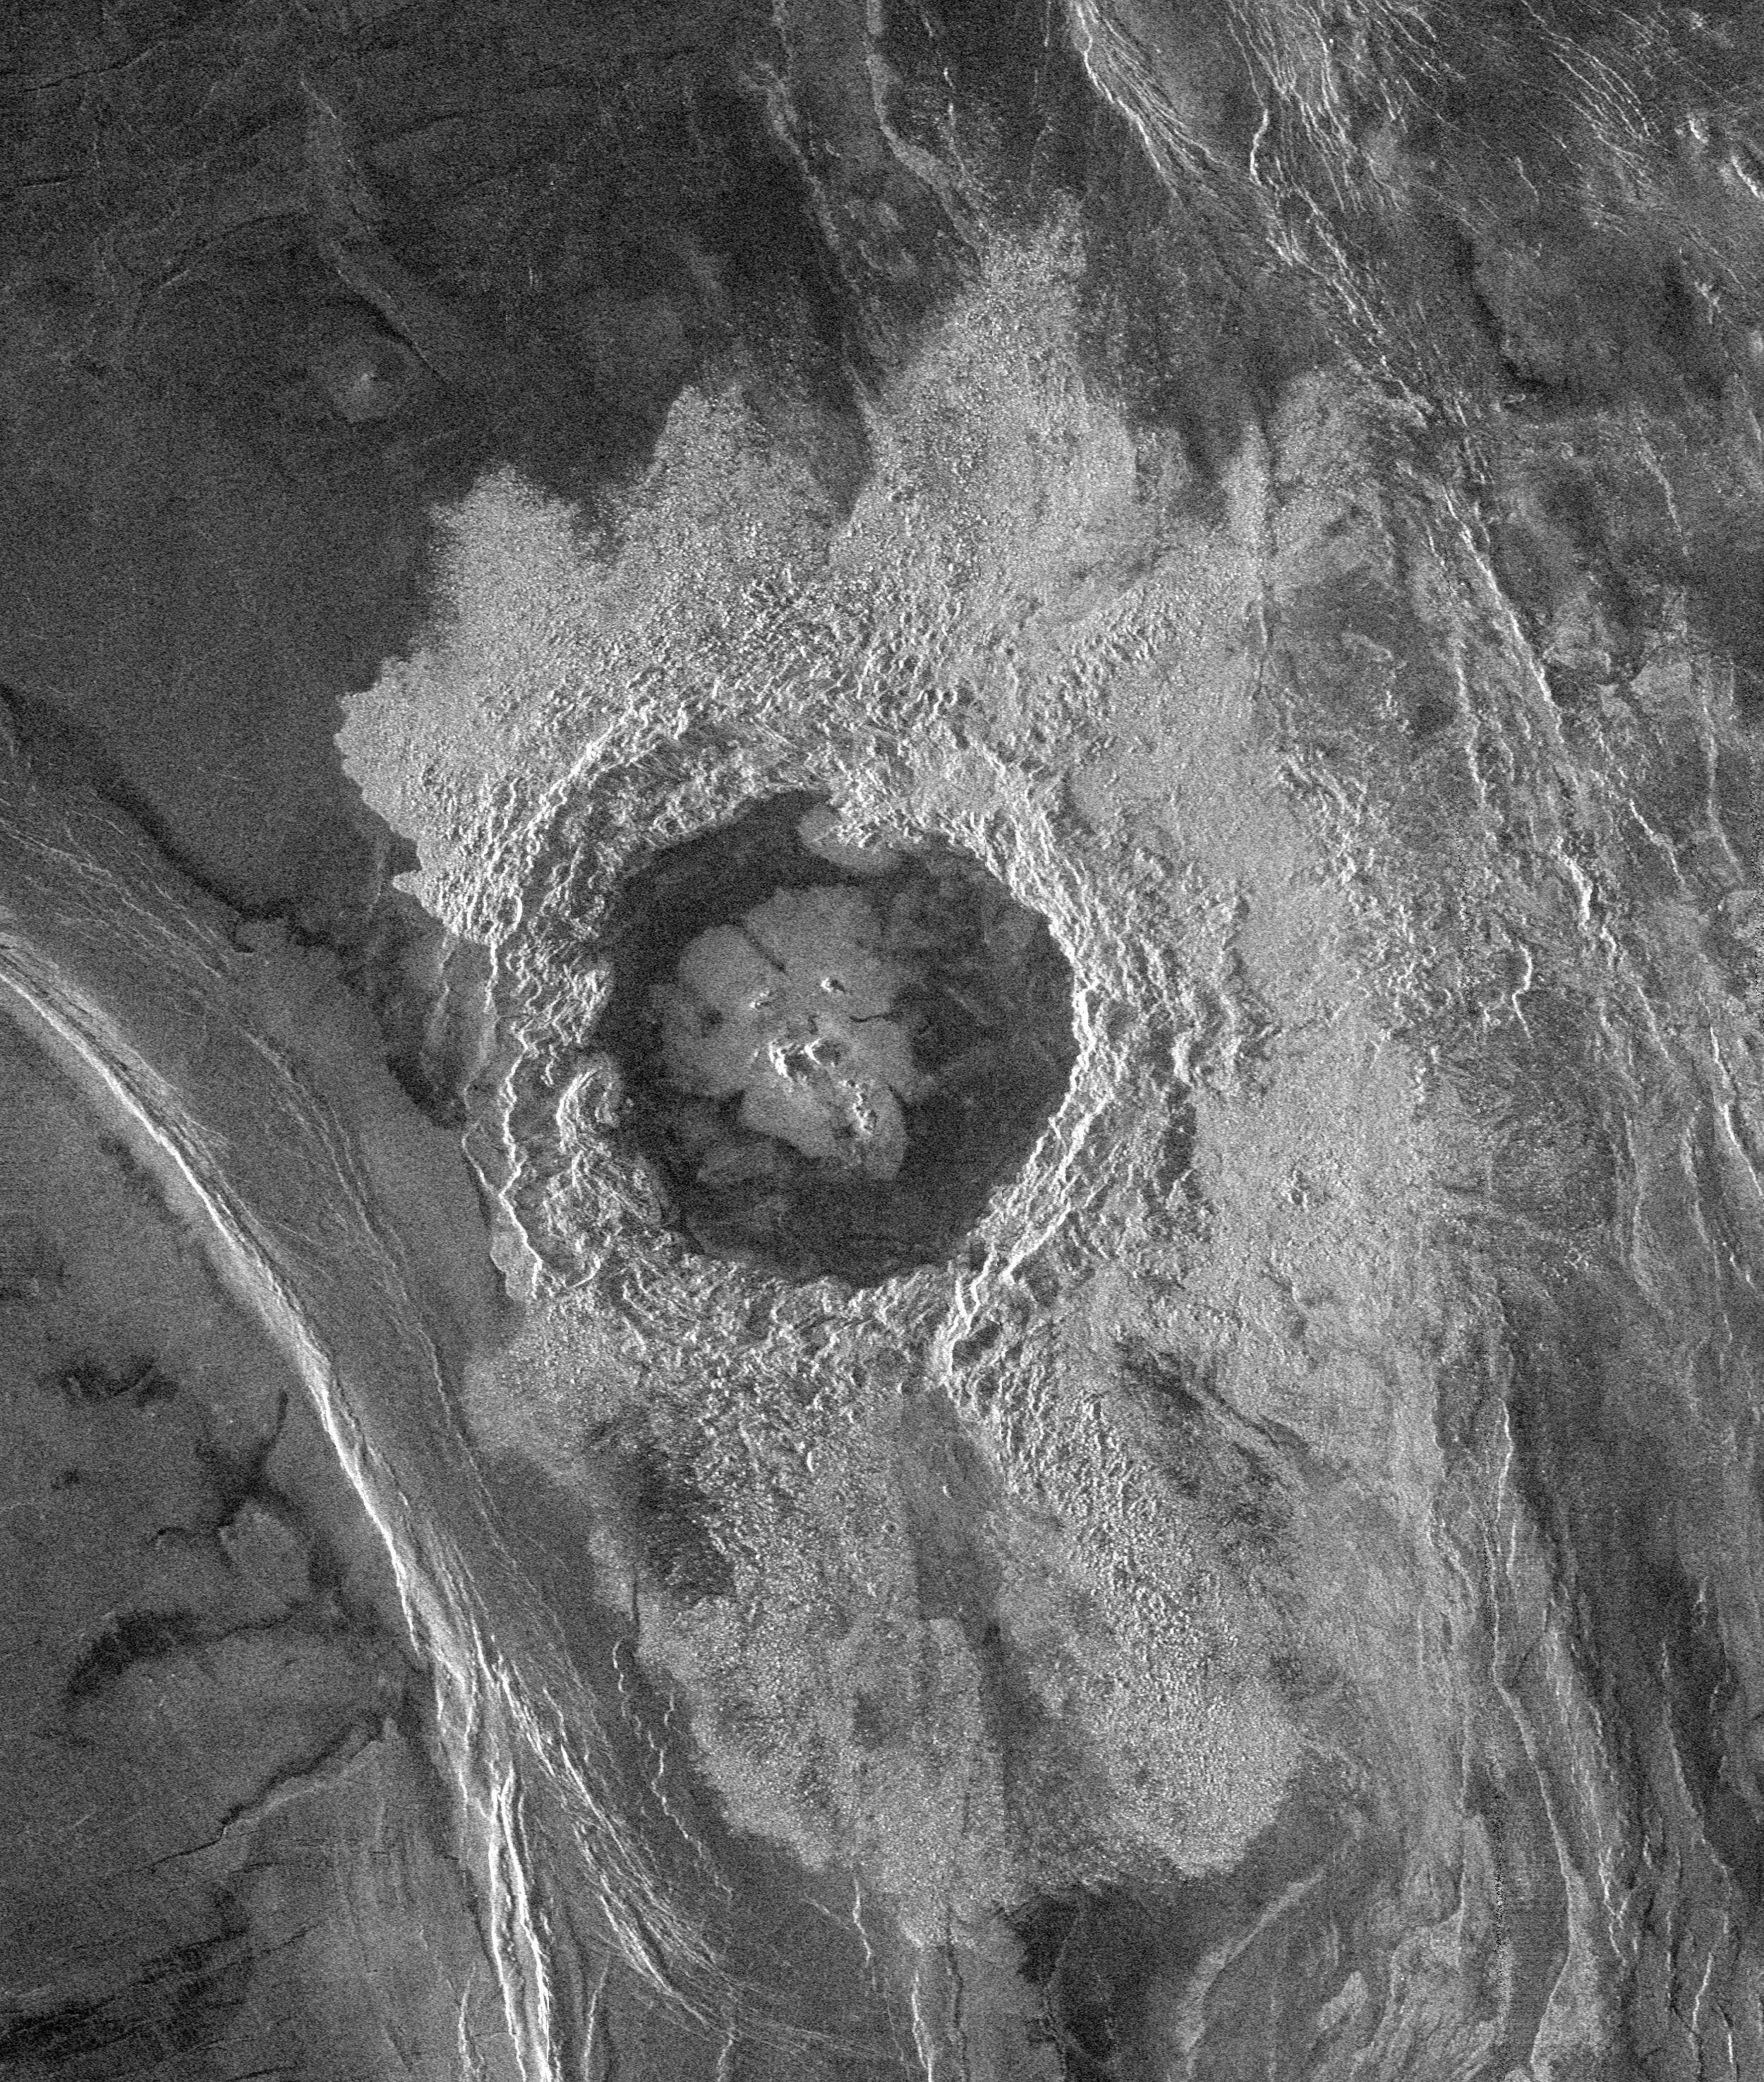 Impact Crater on Venus